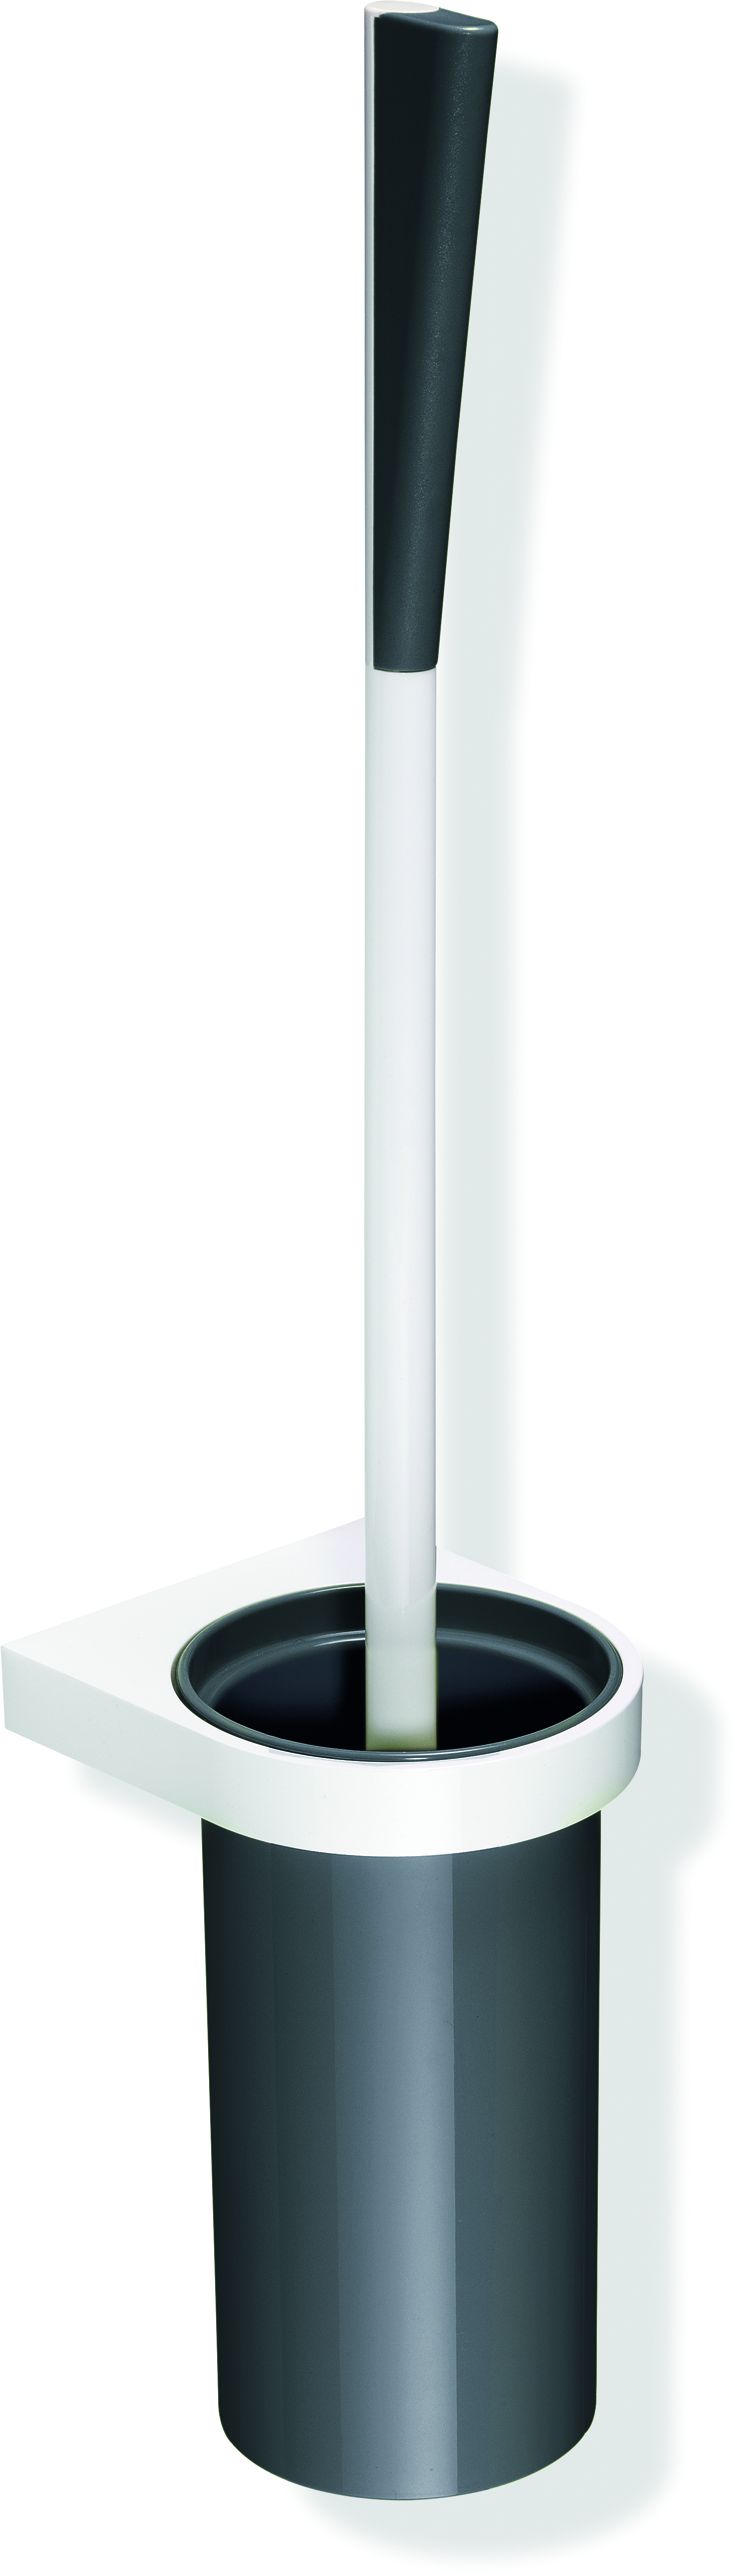 Hewi System 800 K Toilettenbürstengarnitur 800.20.2009955 Behälter Kunststoff, Halter und Bürstenstiel reinweiß, aquablau